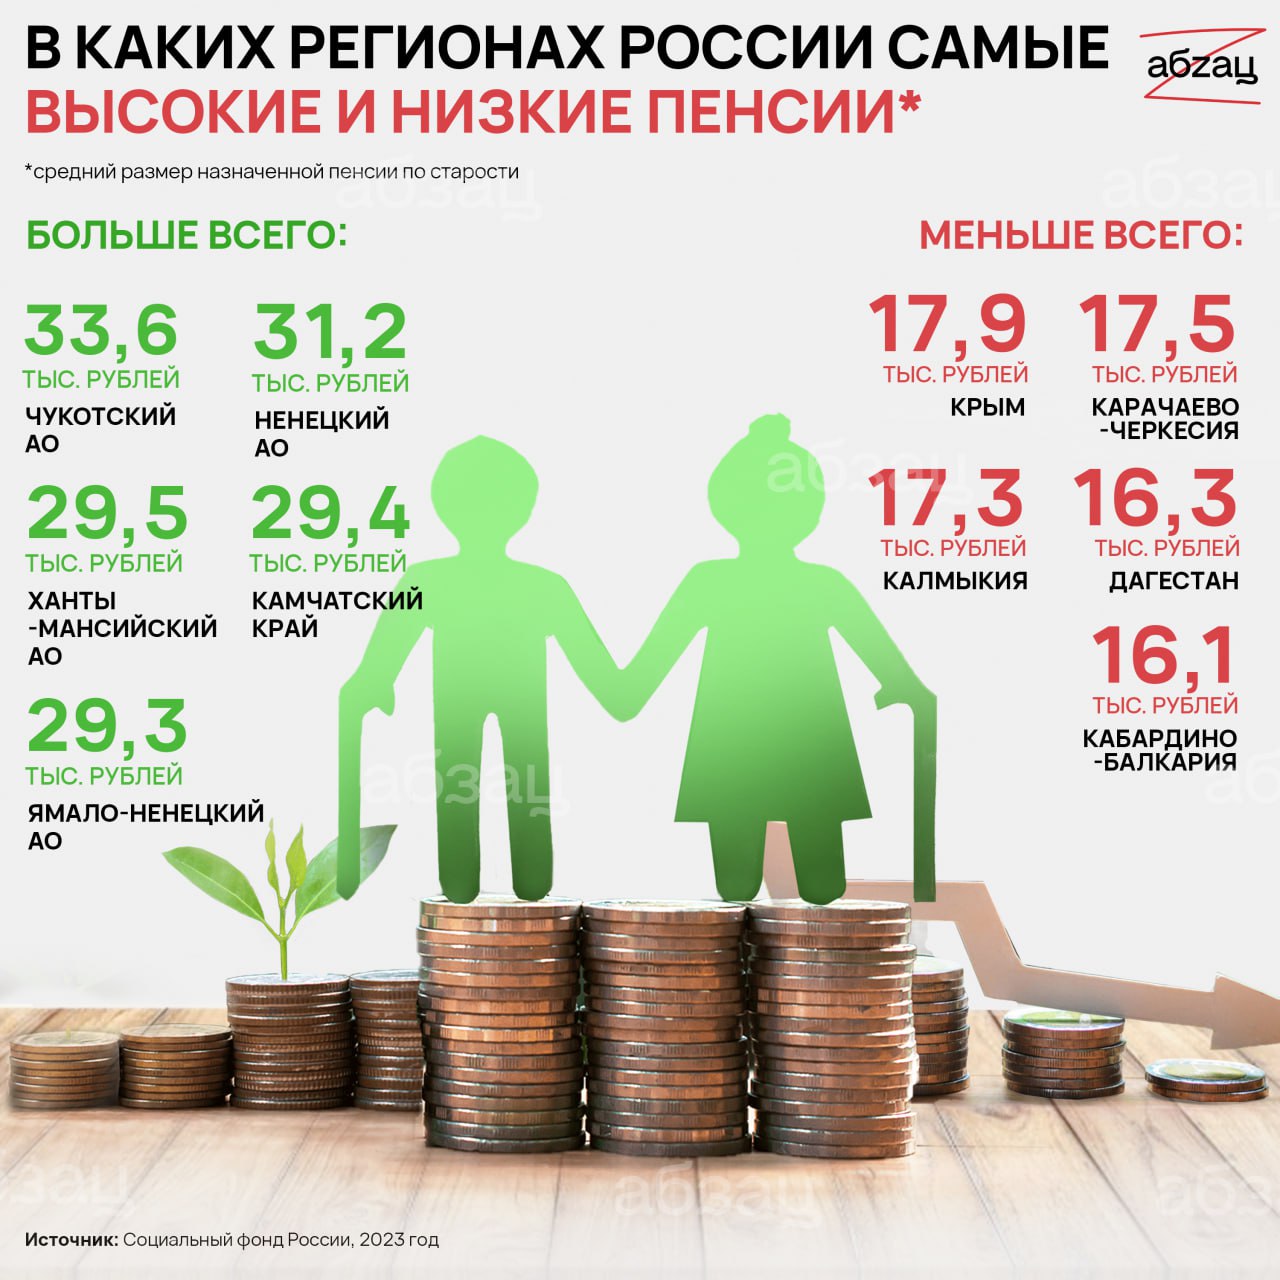 Самая высокая пенсия в России. Самые высокие пенсии в России по регионам. Сумма социальной пенсии в 2023 году. Средняя пенсия в России в 2023. Социальная пенсия по старости 2023 году